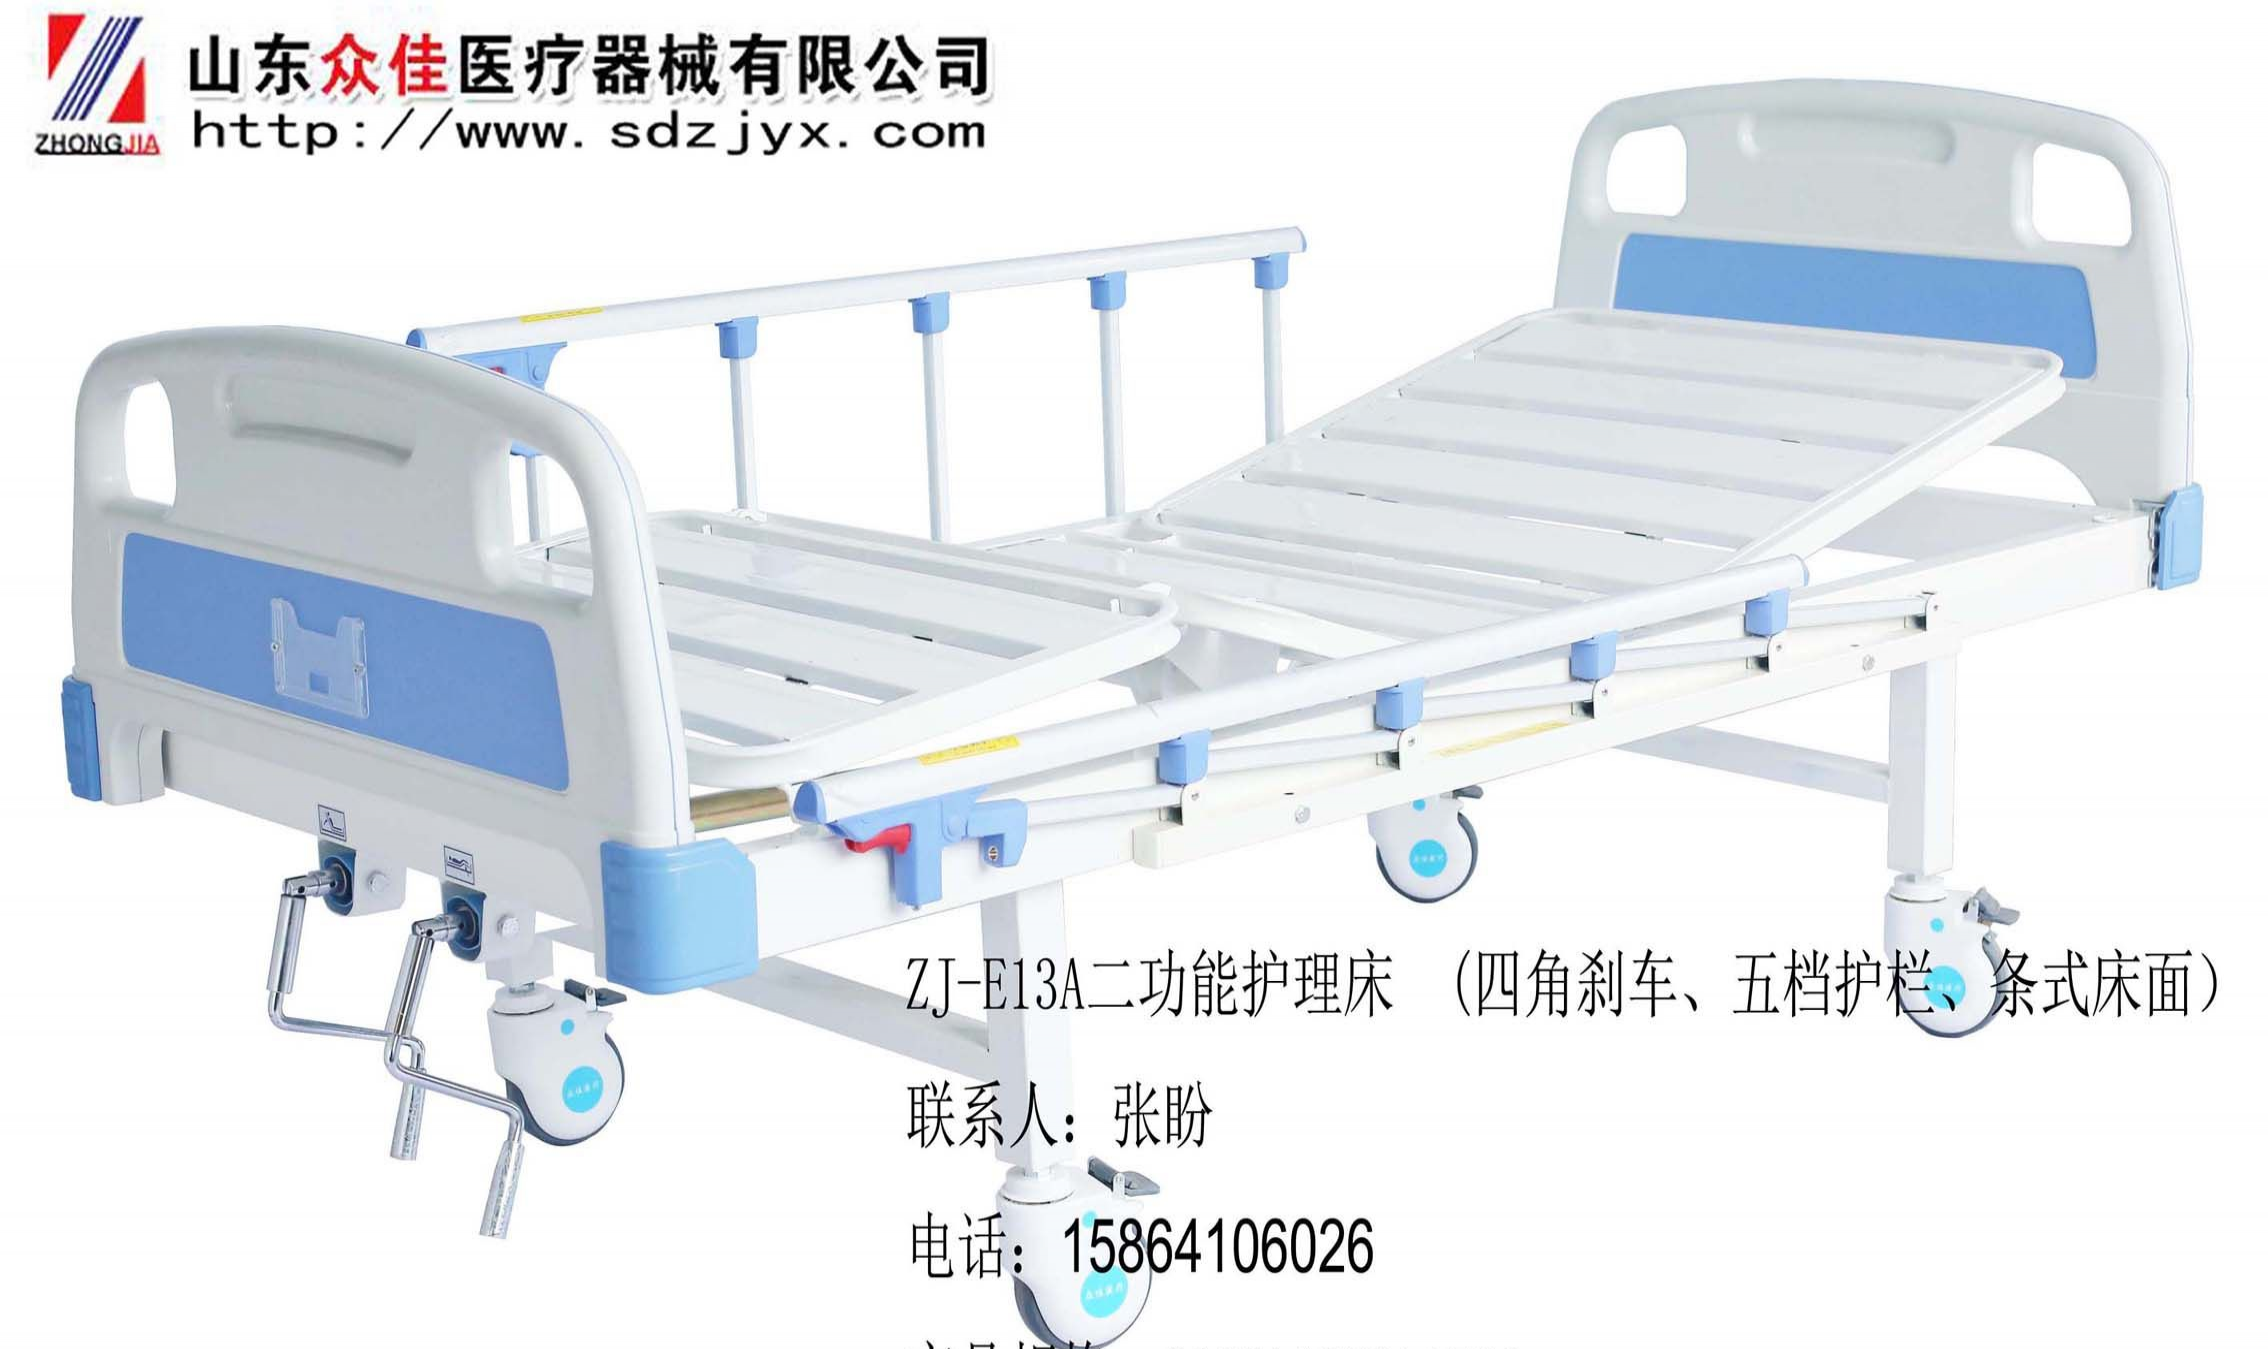 ZJ-E13A二功能护理床(四角刹车、五档护栏、条式床面